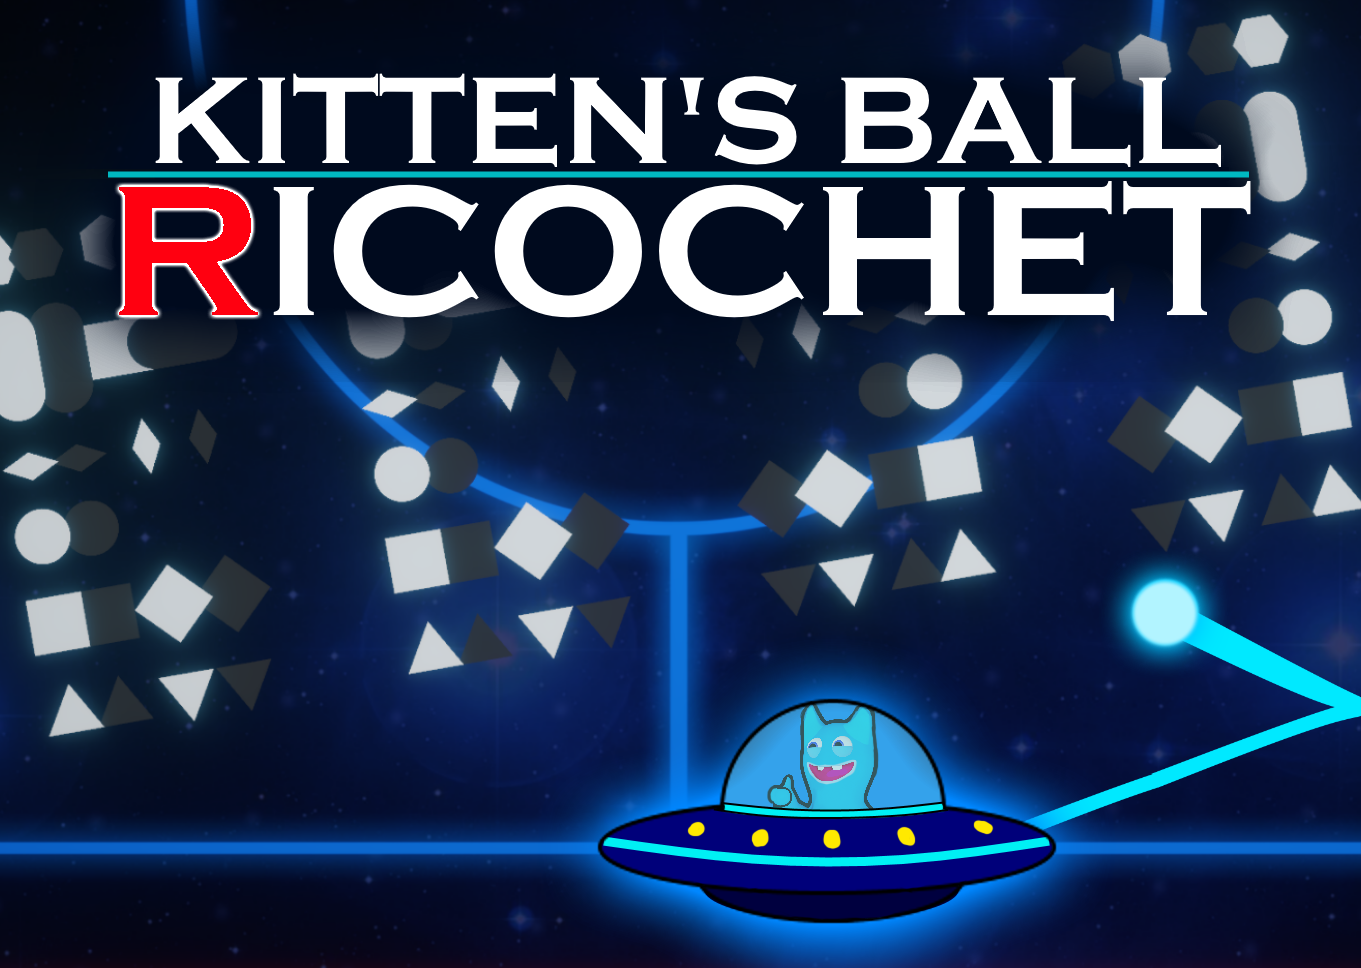 Kitten's Ball Ricochet